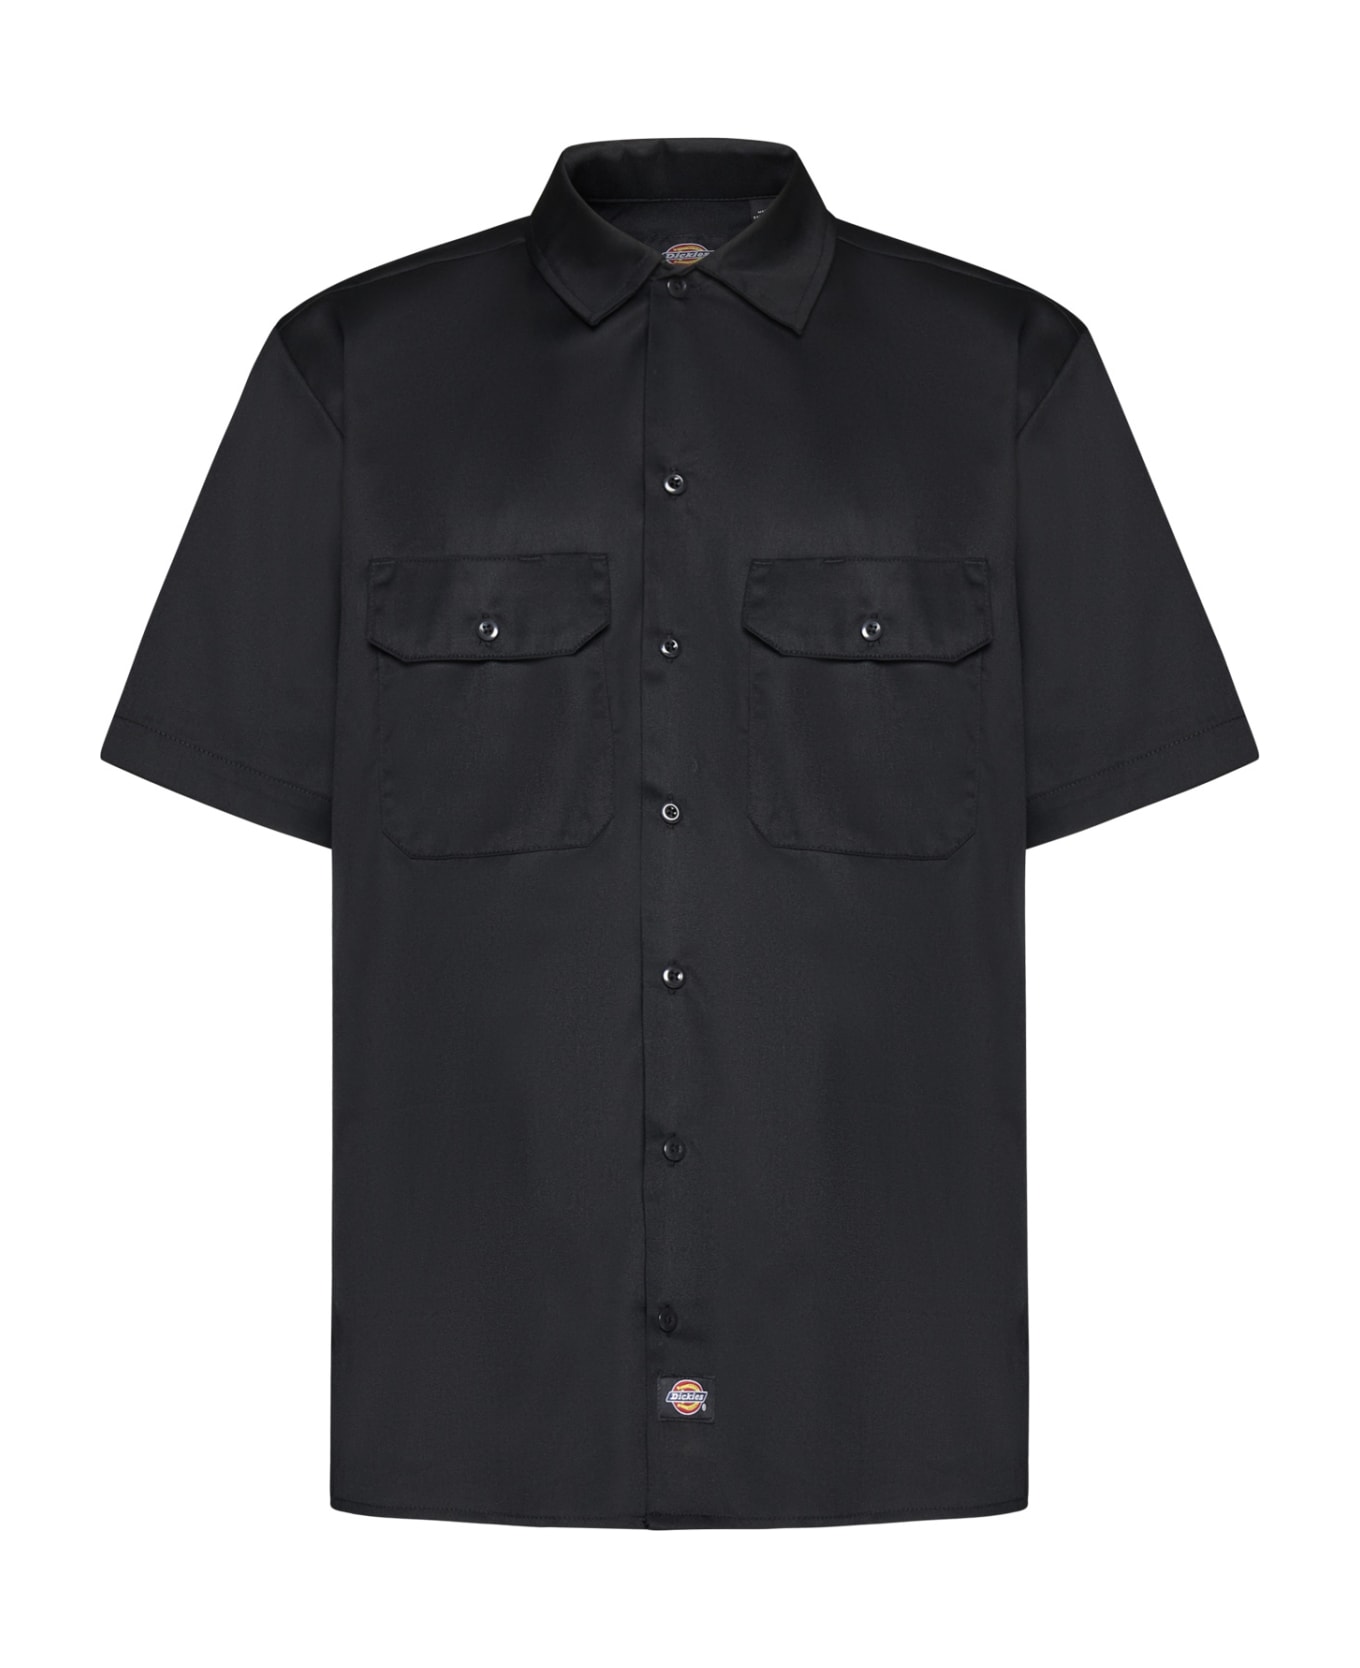 Dickies Shirt - Black